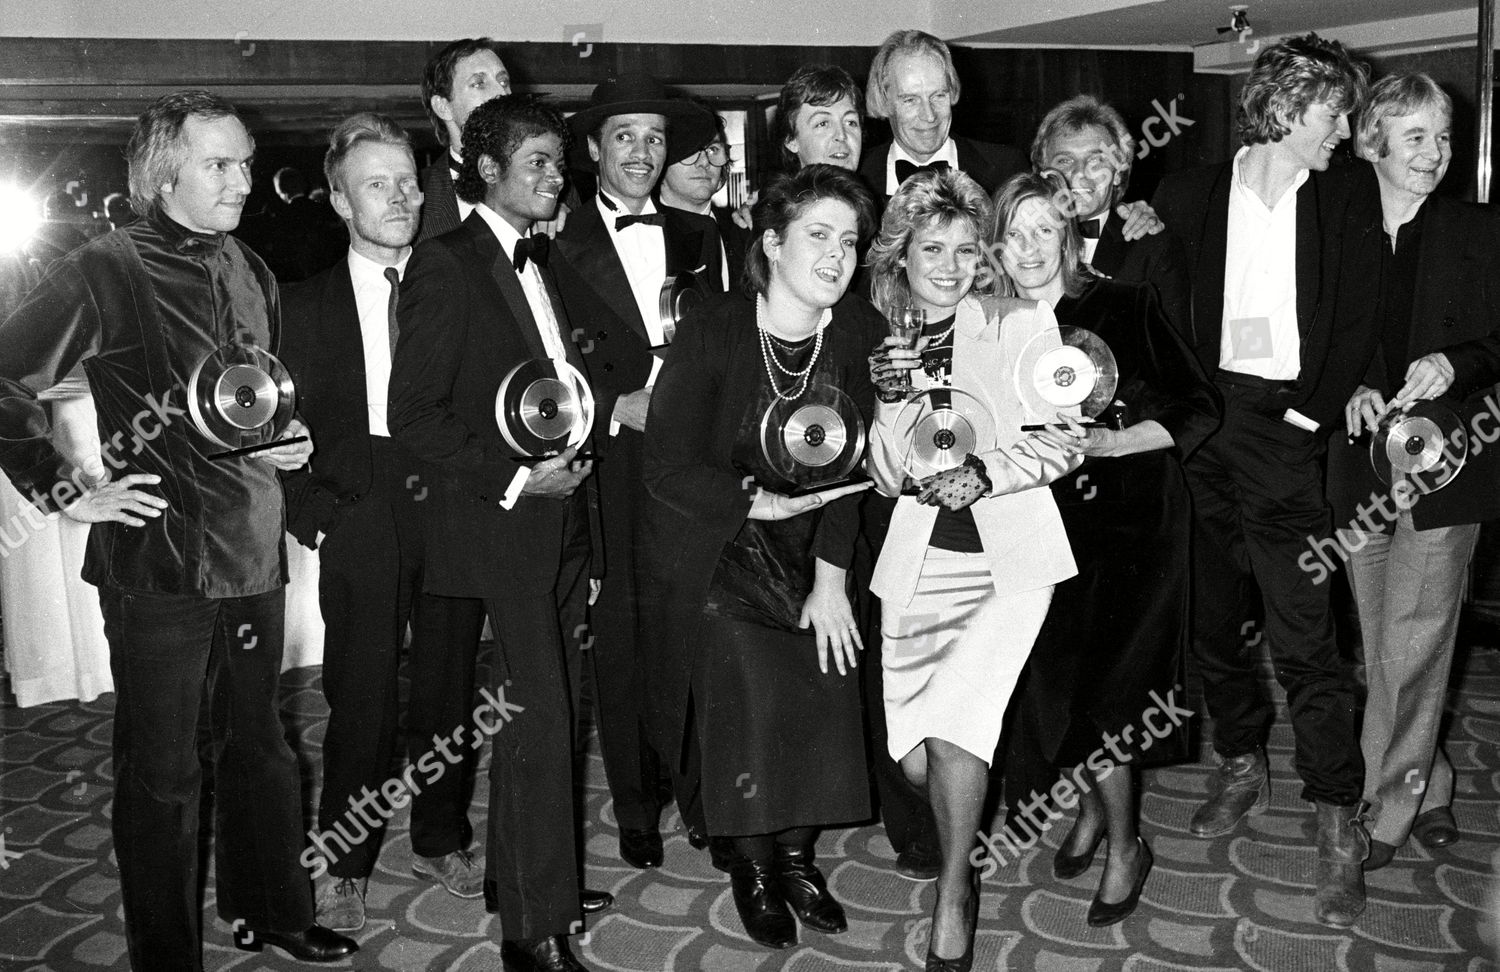 1983-brits-awards-shutterstock-editorial-7527042m.jpg